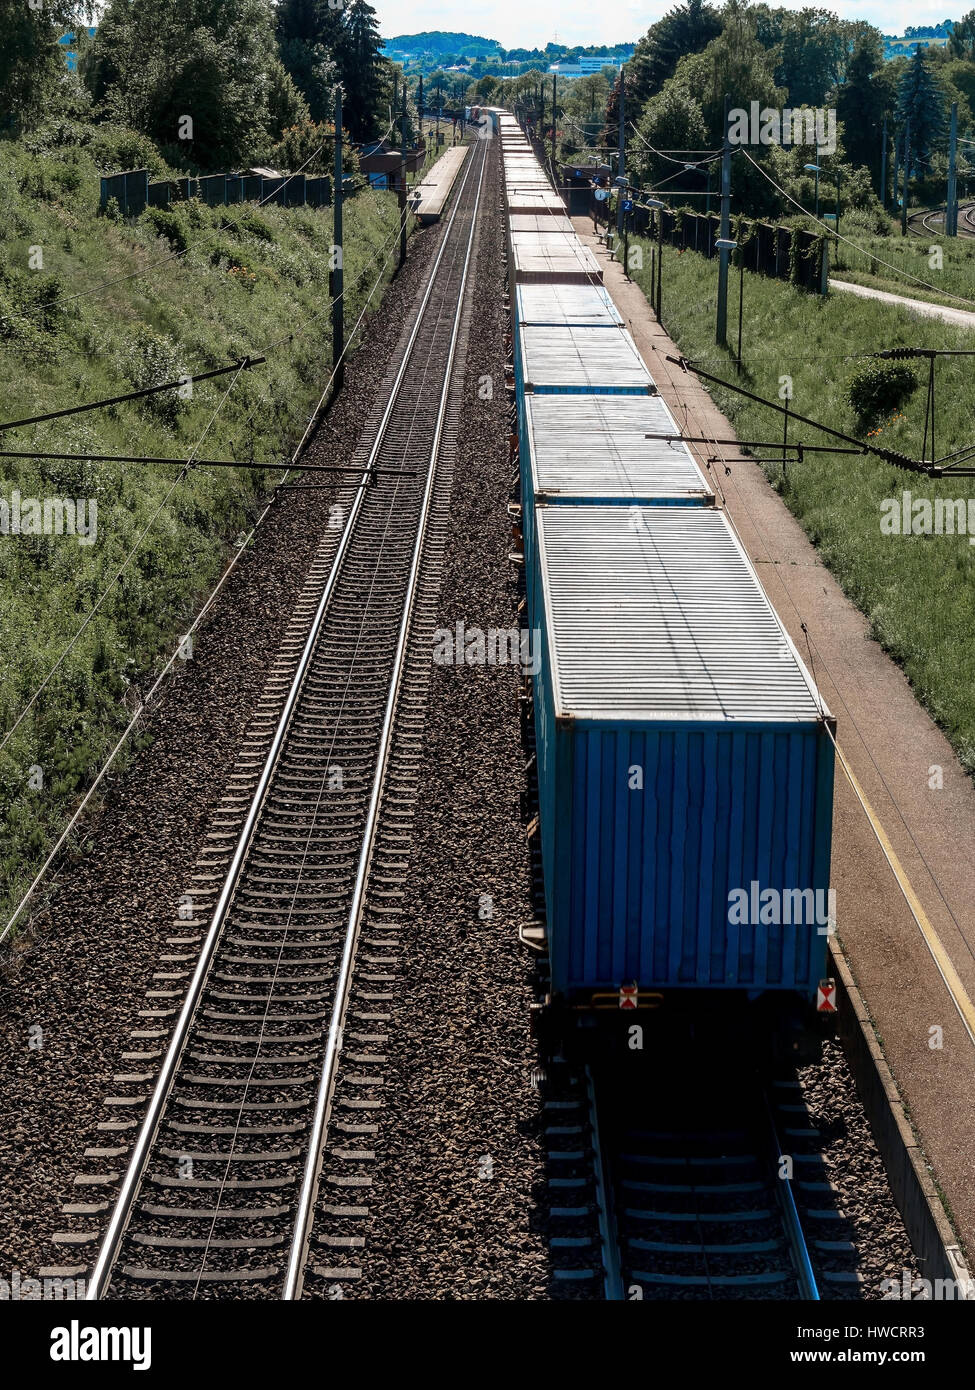 A train with goods on a section, Ein Zug mit Gütern auf einer Bahnstrecke Stock Photo